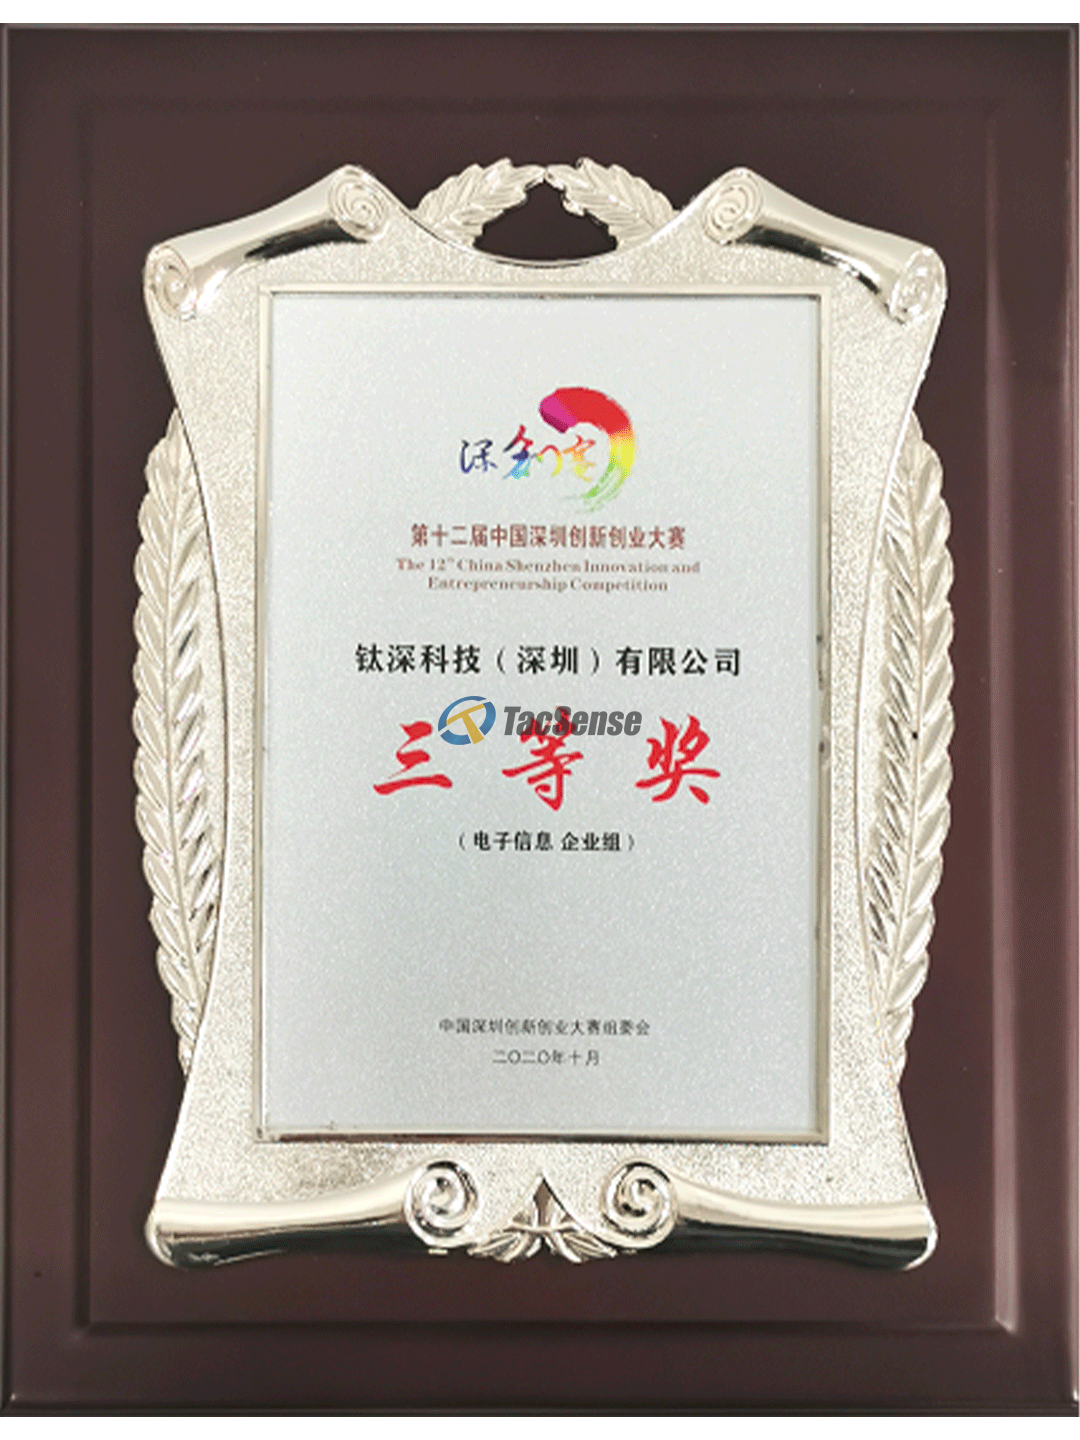 第十二届深圳市创新创业大赛企业组三等奖